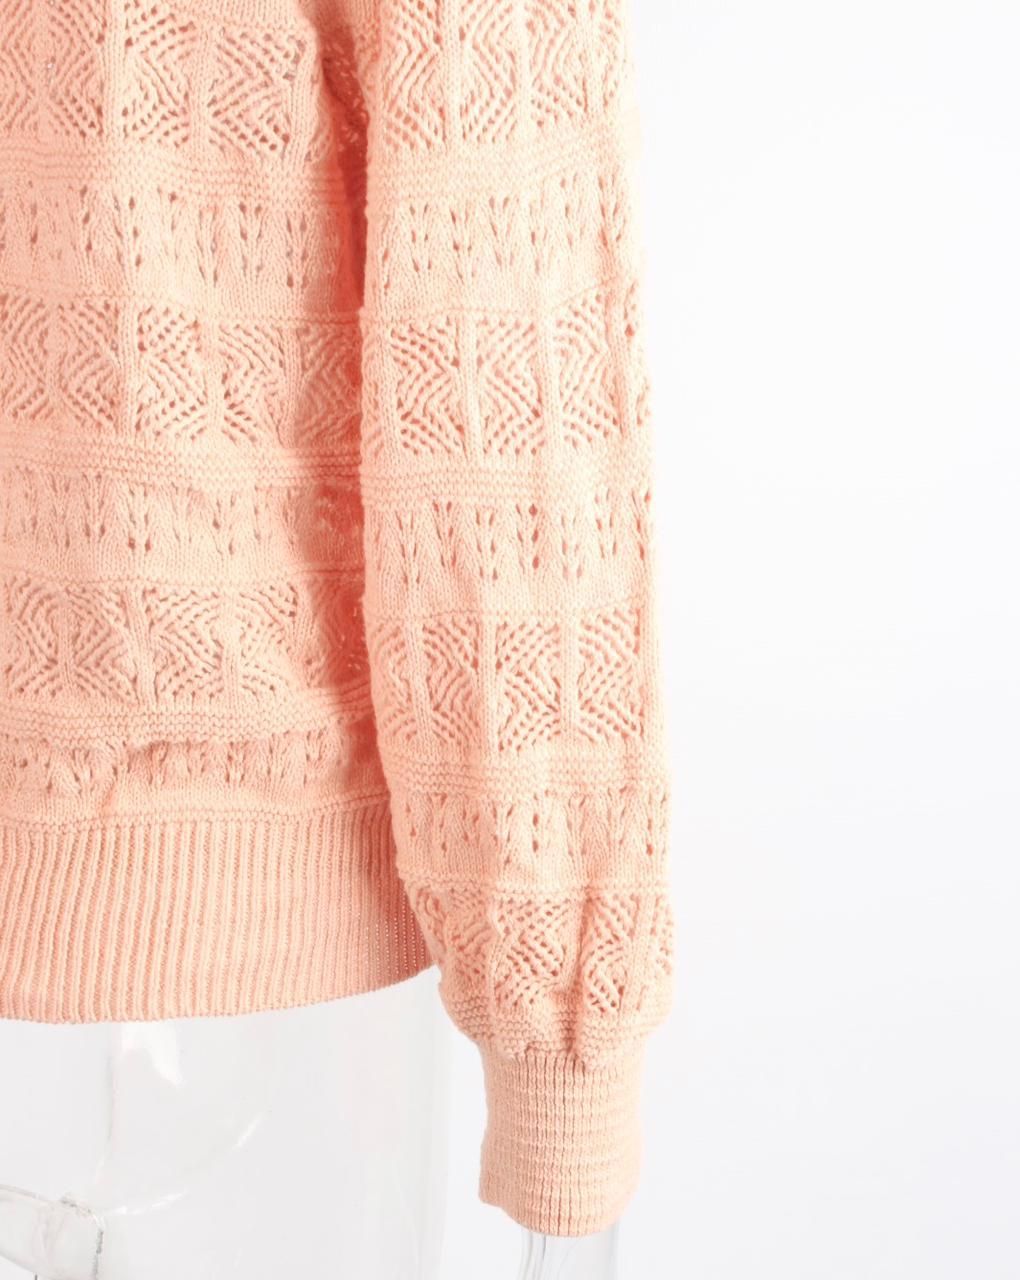 Pullovers Knitwear hoodie jersey - XD21